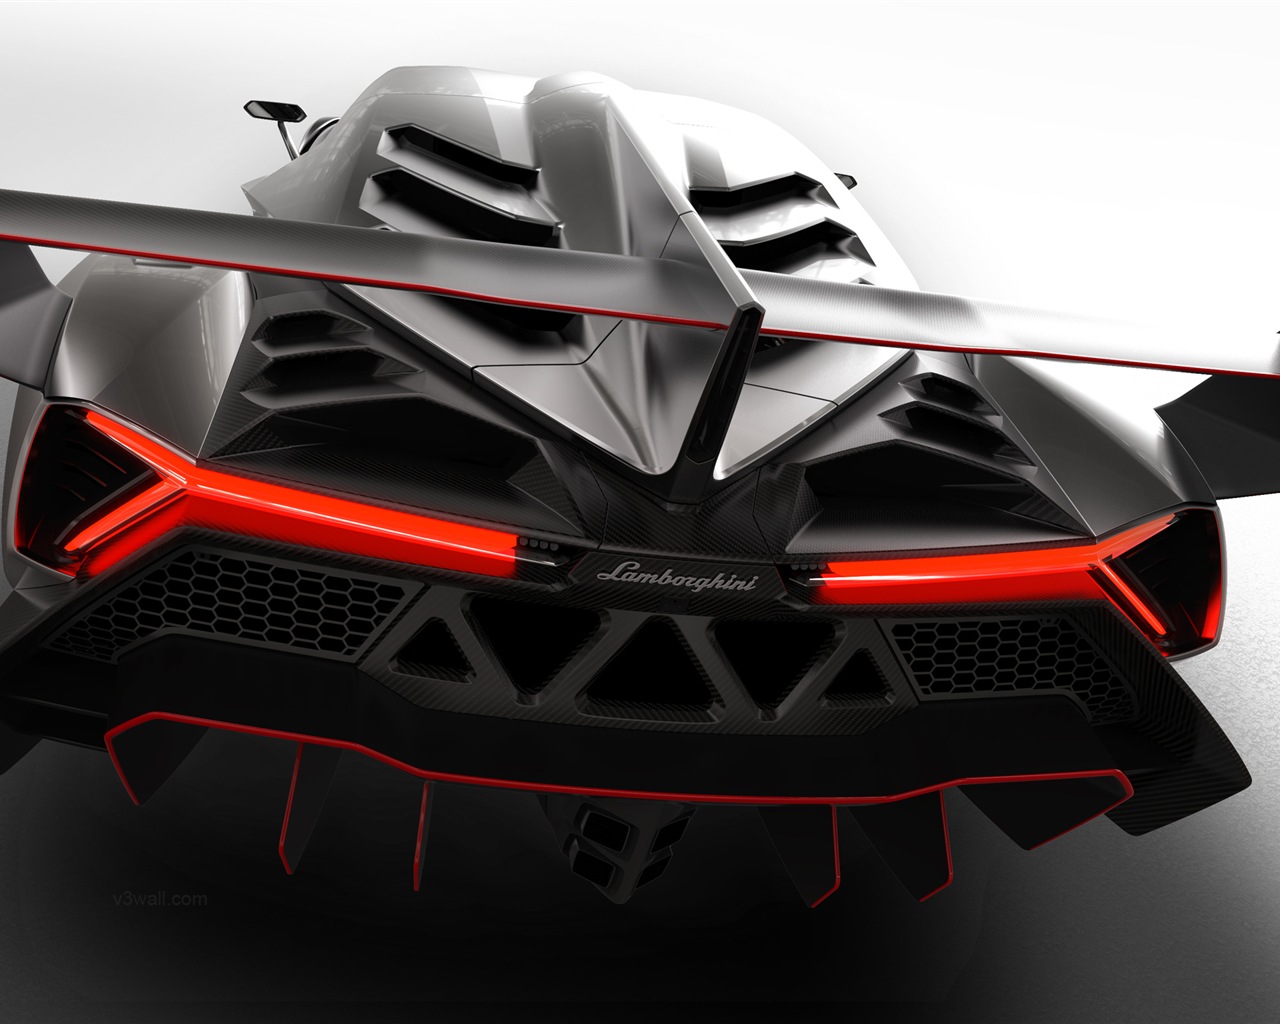 2013 Lamborghini Veneno 蘭博基尼Veneno豪華超級跑車高清壁紙 #5 - 1280x1024